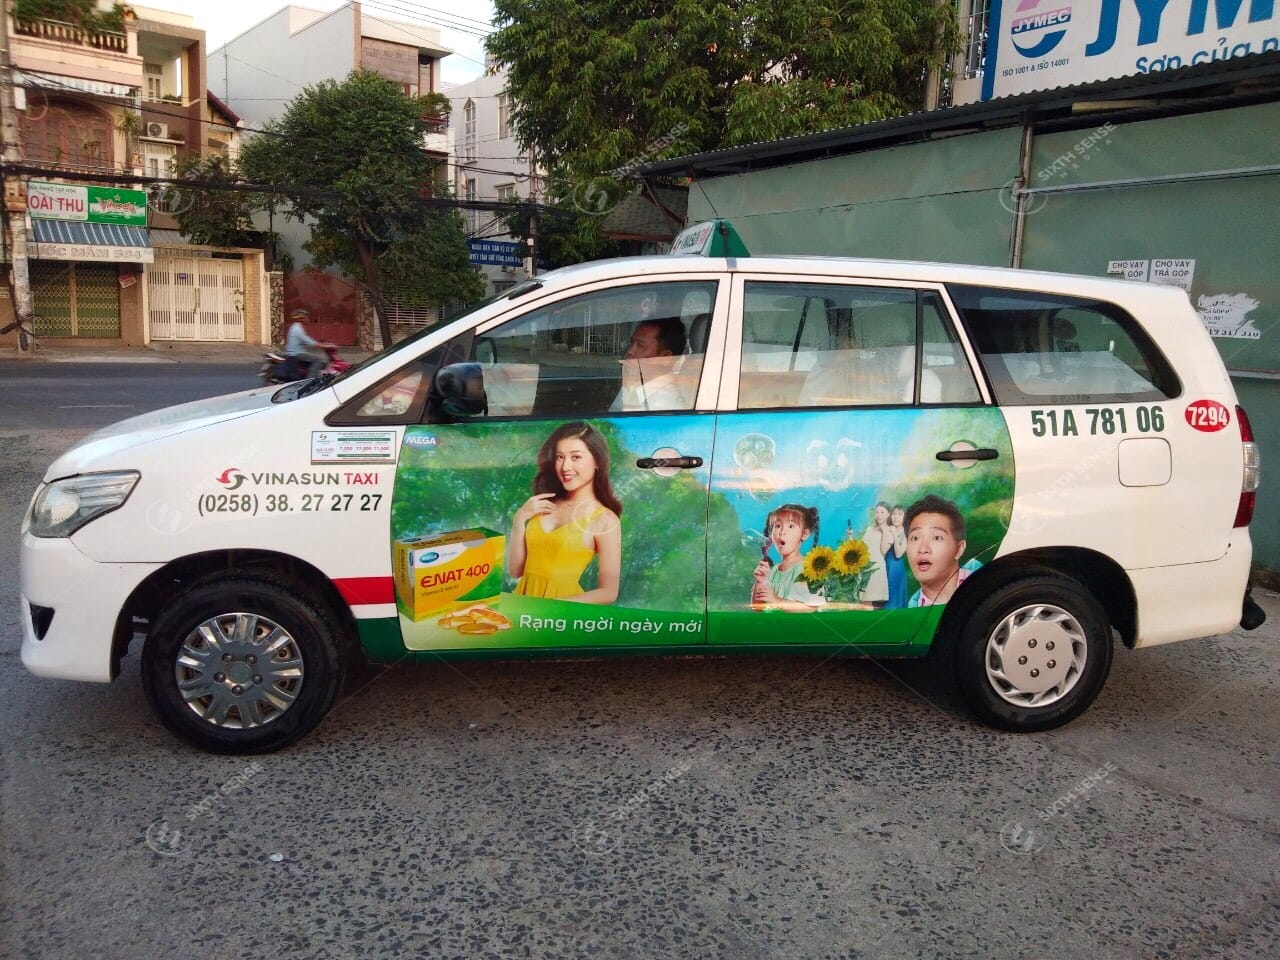 Mega wecare quảng cáo 4 cánh trên xe taxi Vinasun 7 chỗ tại Nha Trang